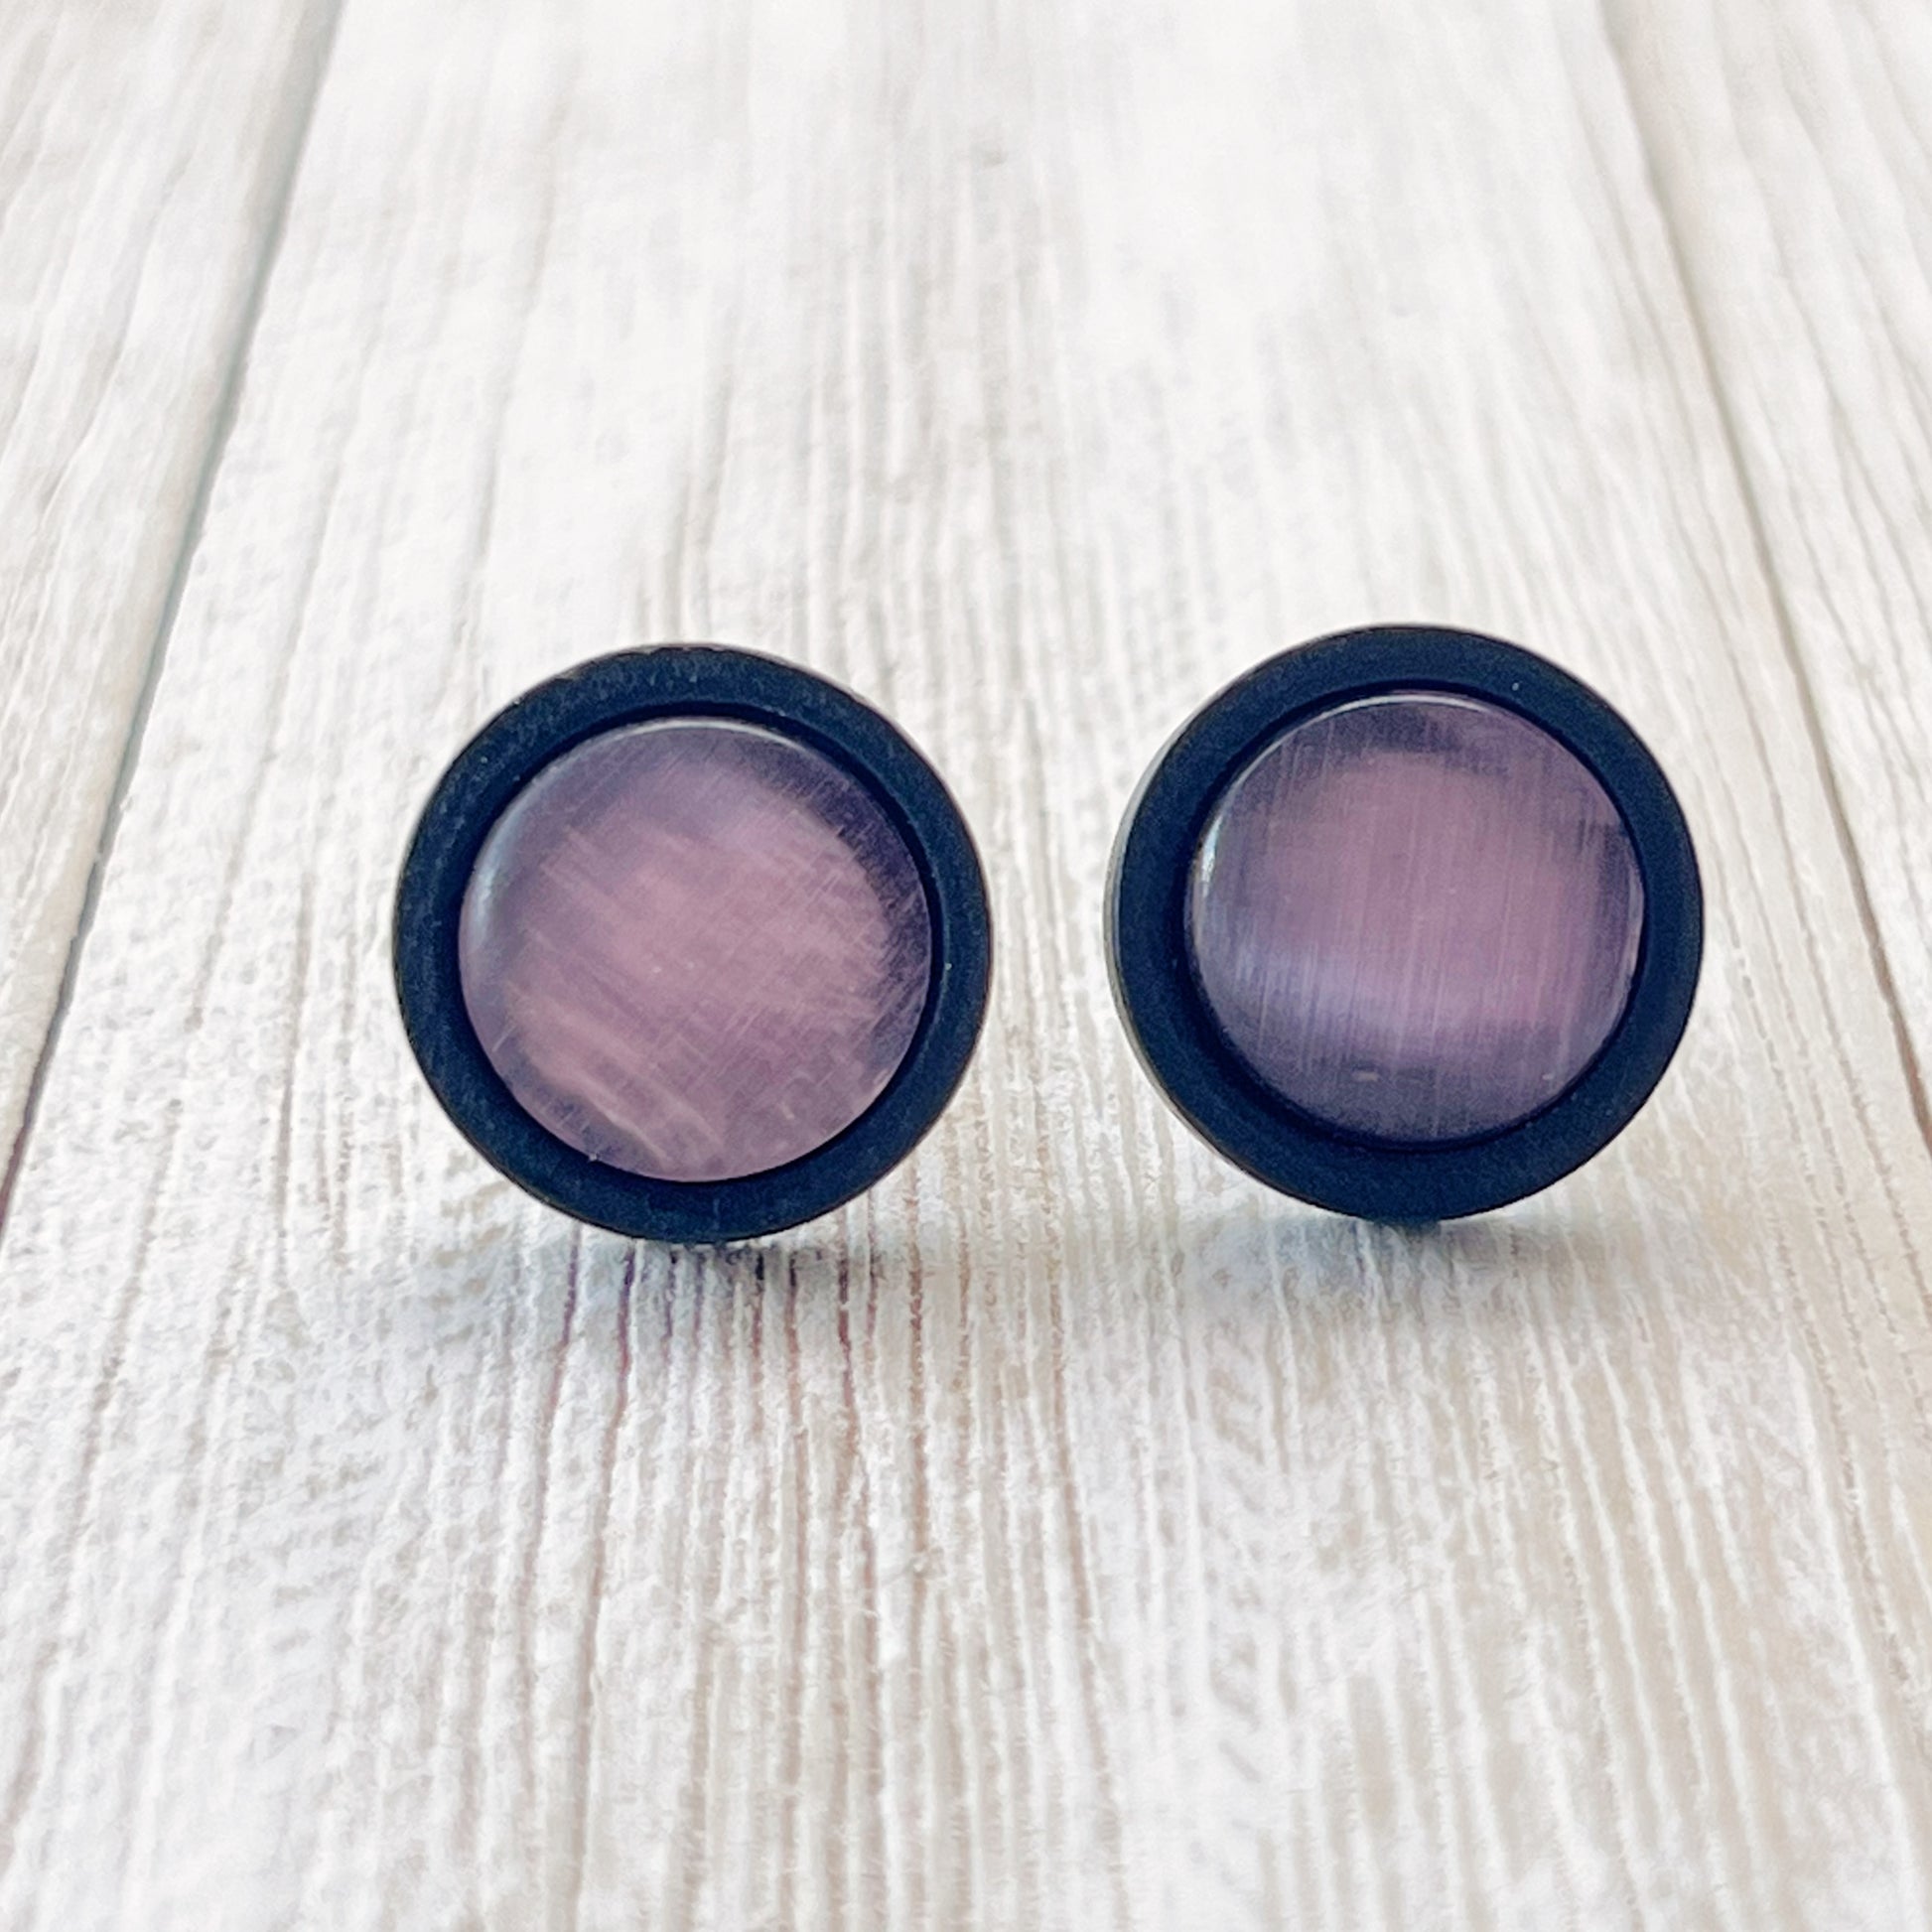 Purple Glass Black Wood Unisex Stud Earrings - Stylish & Versatile Accessories